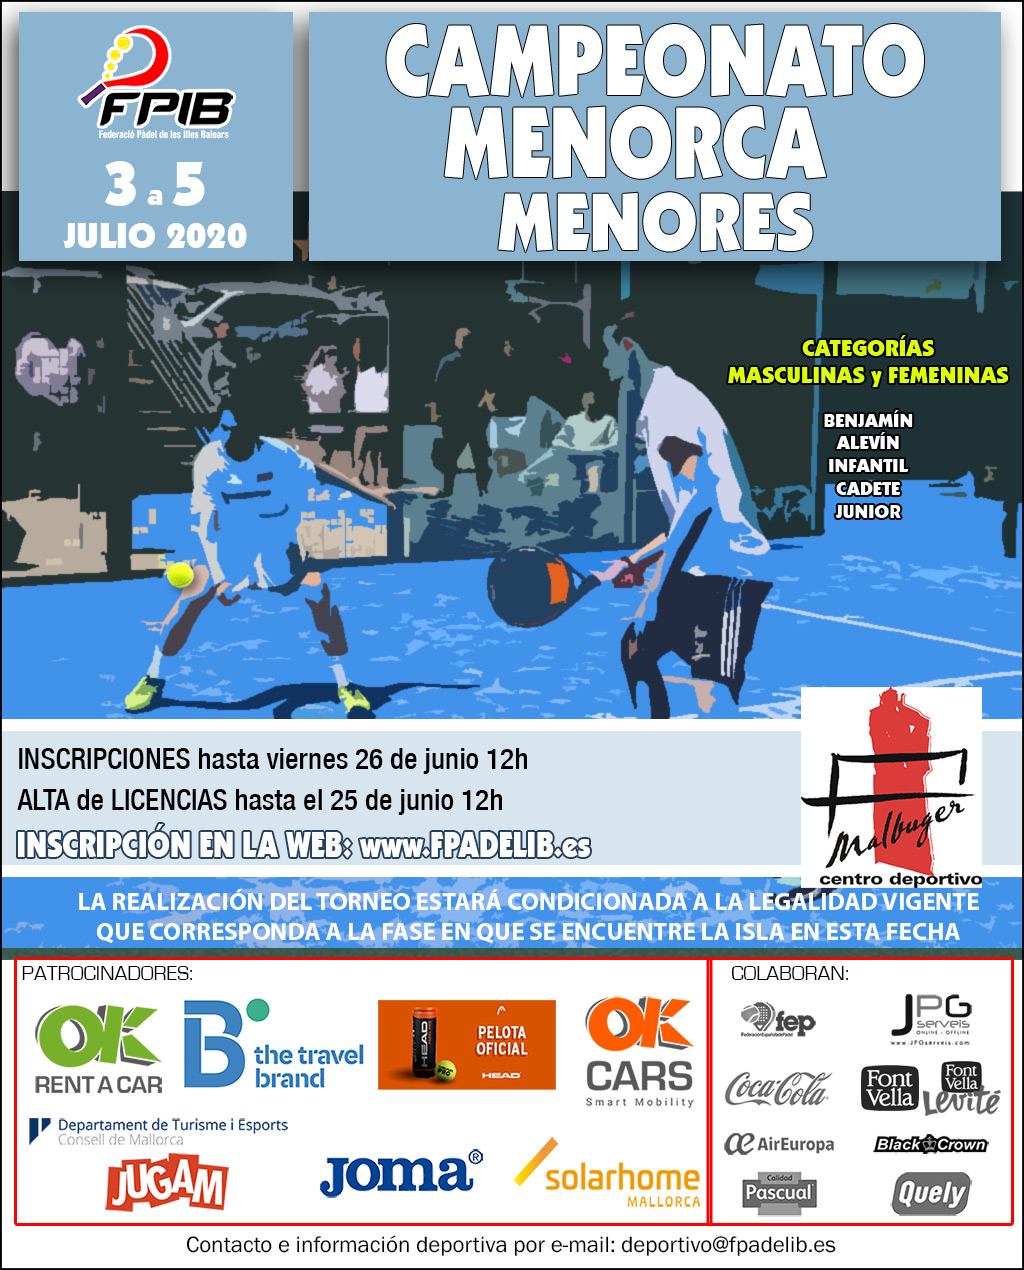 Campeonato de Menorca de Menores - 2020